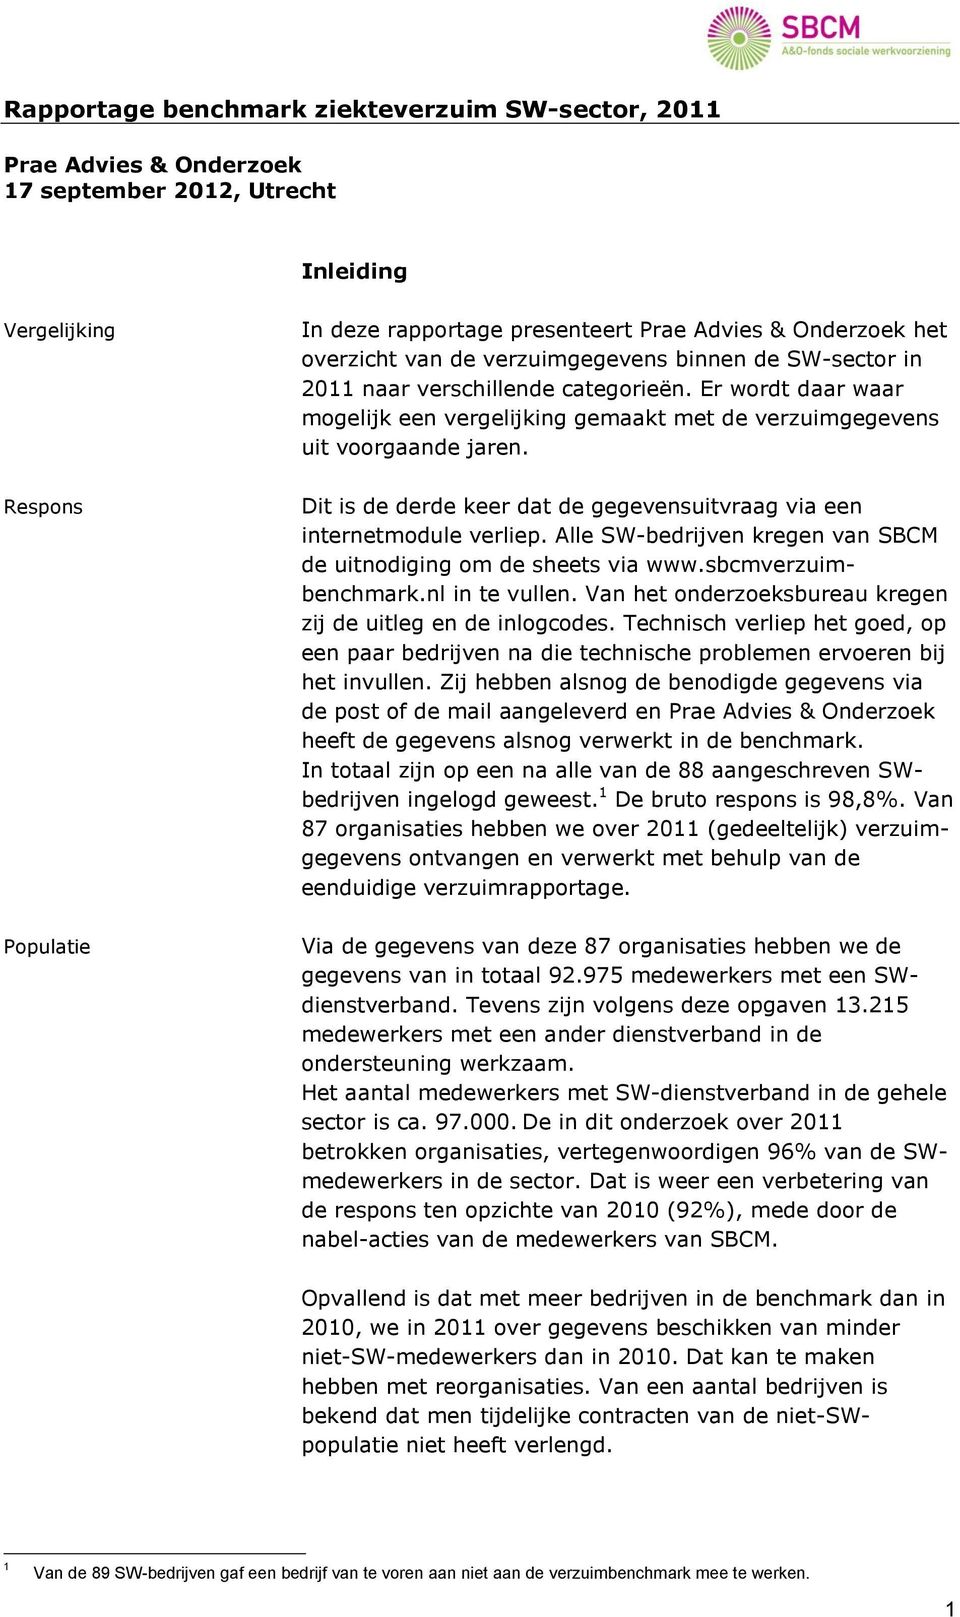 Dit is de derde keer dat de gegevensuitvraag via een internetmodule verliep. Alle SW-bedrijven kregen van SBCM de uitnodiging om de sheets via www.sbcmverzuimbenchmark.nl in te vullen.